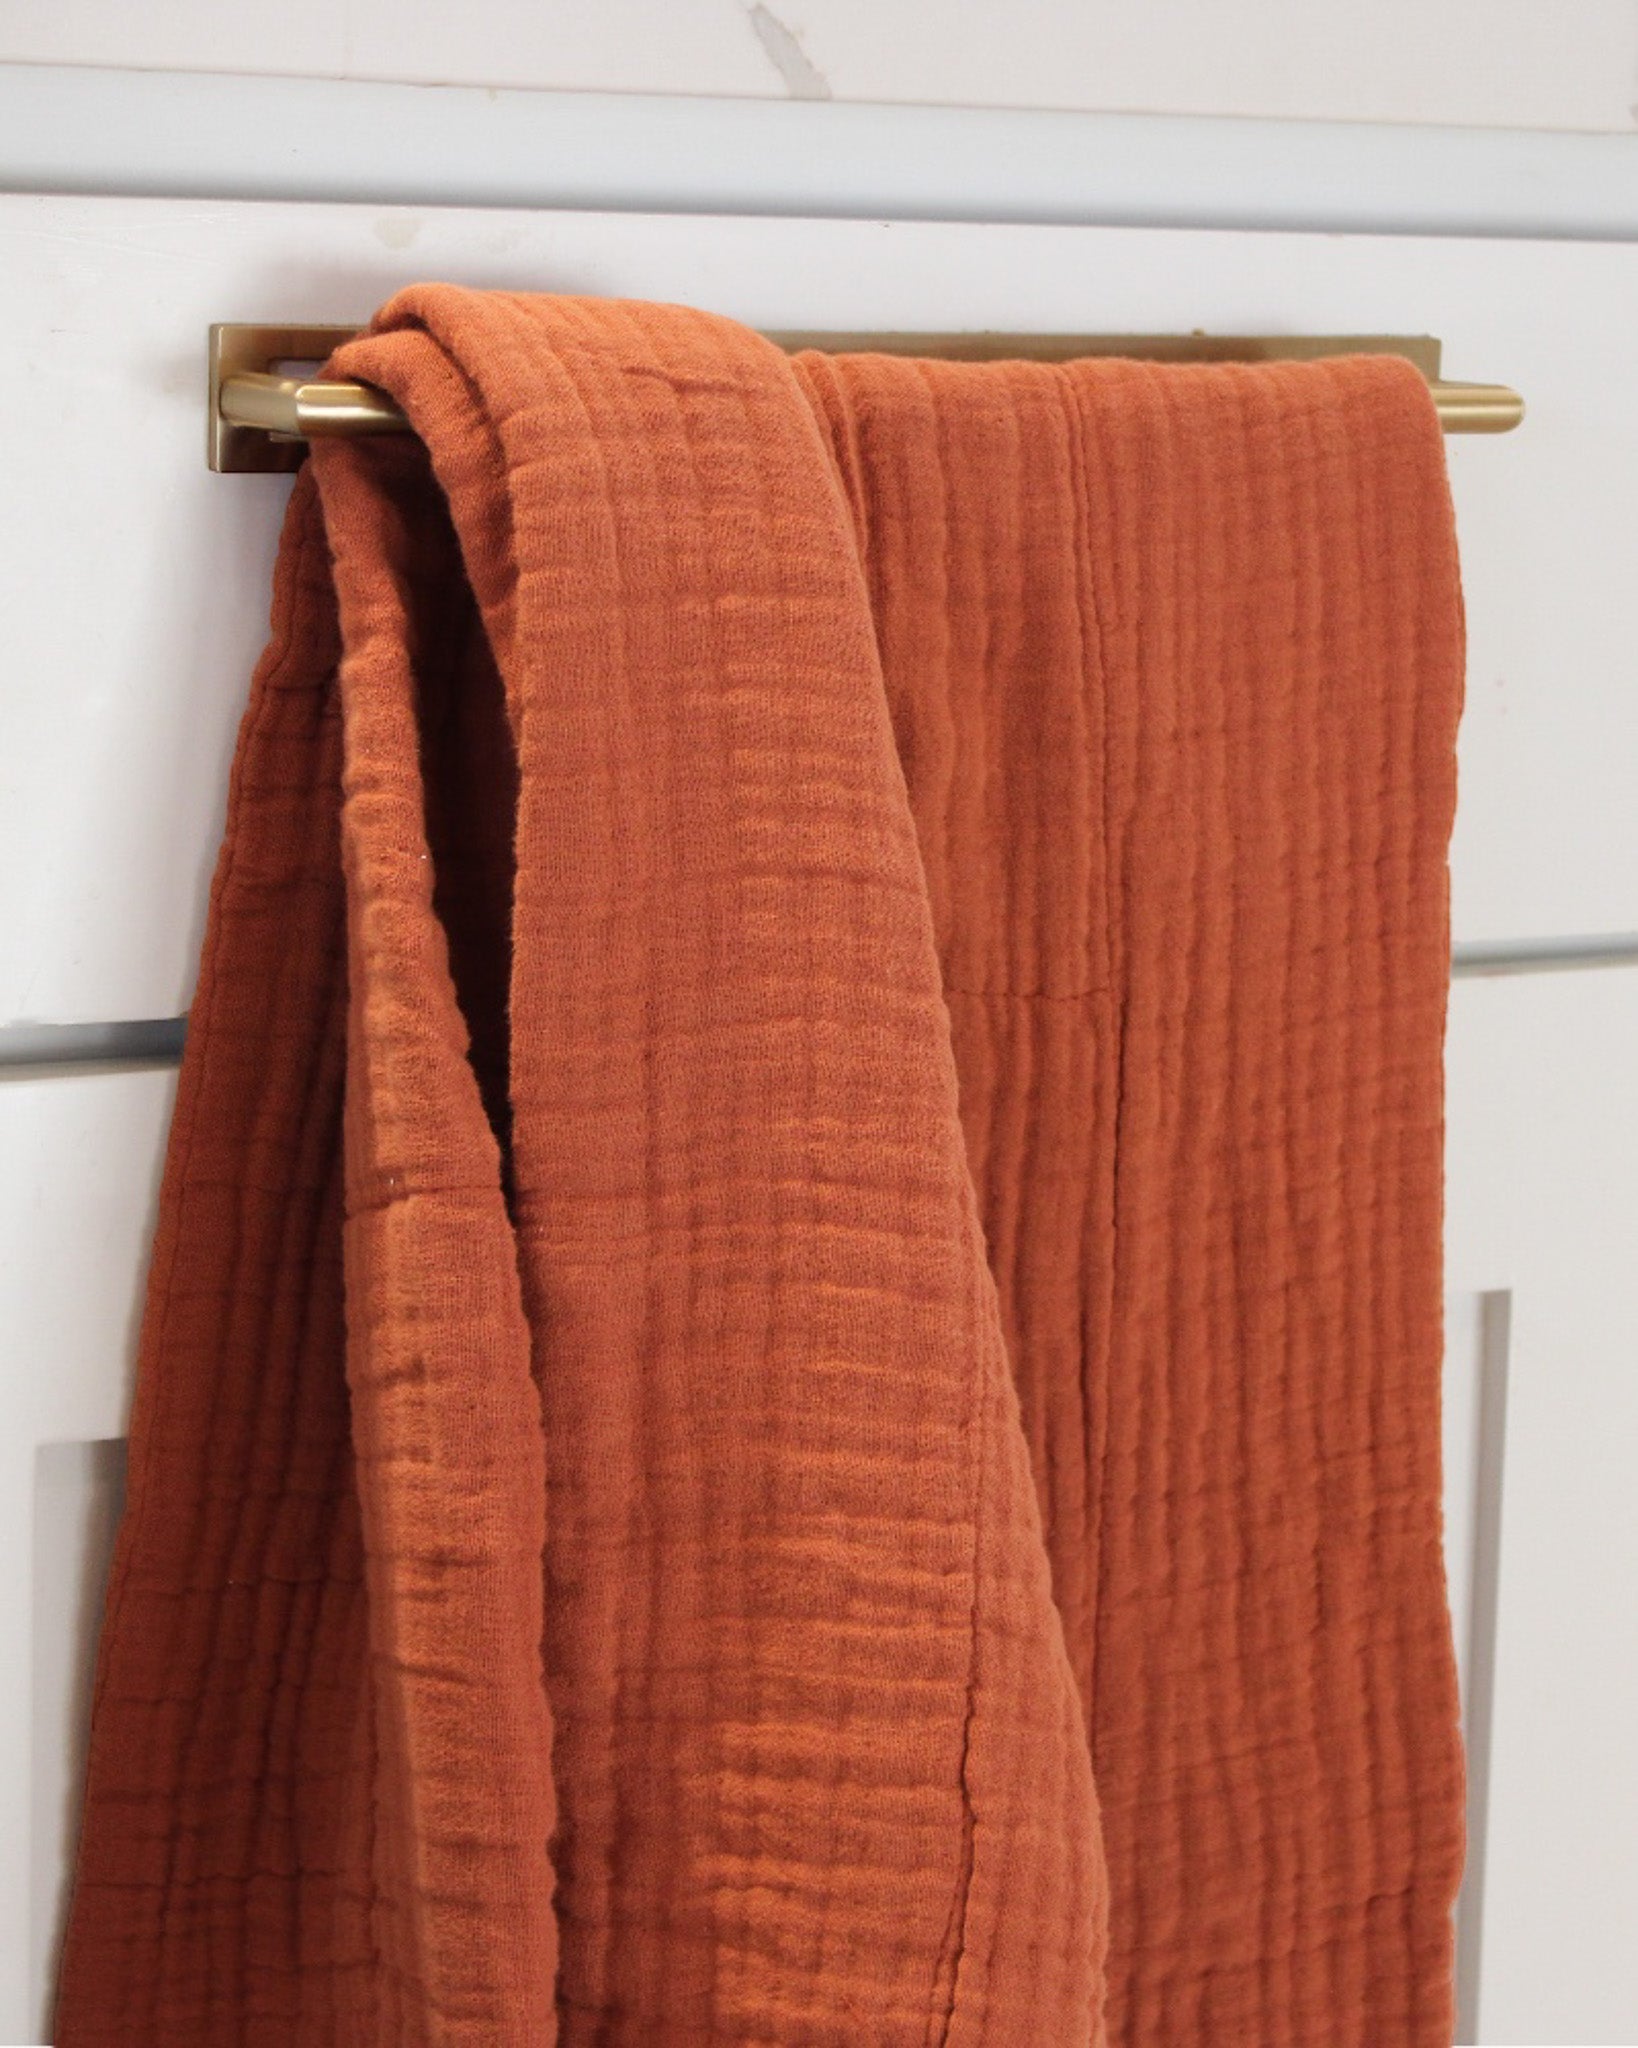 Natural Linen Towels Set Heavy Bath Towels 4 Rustic Towels Men